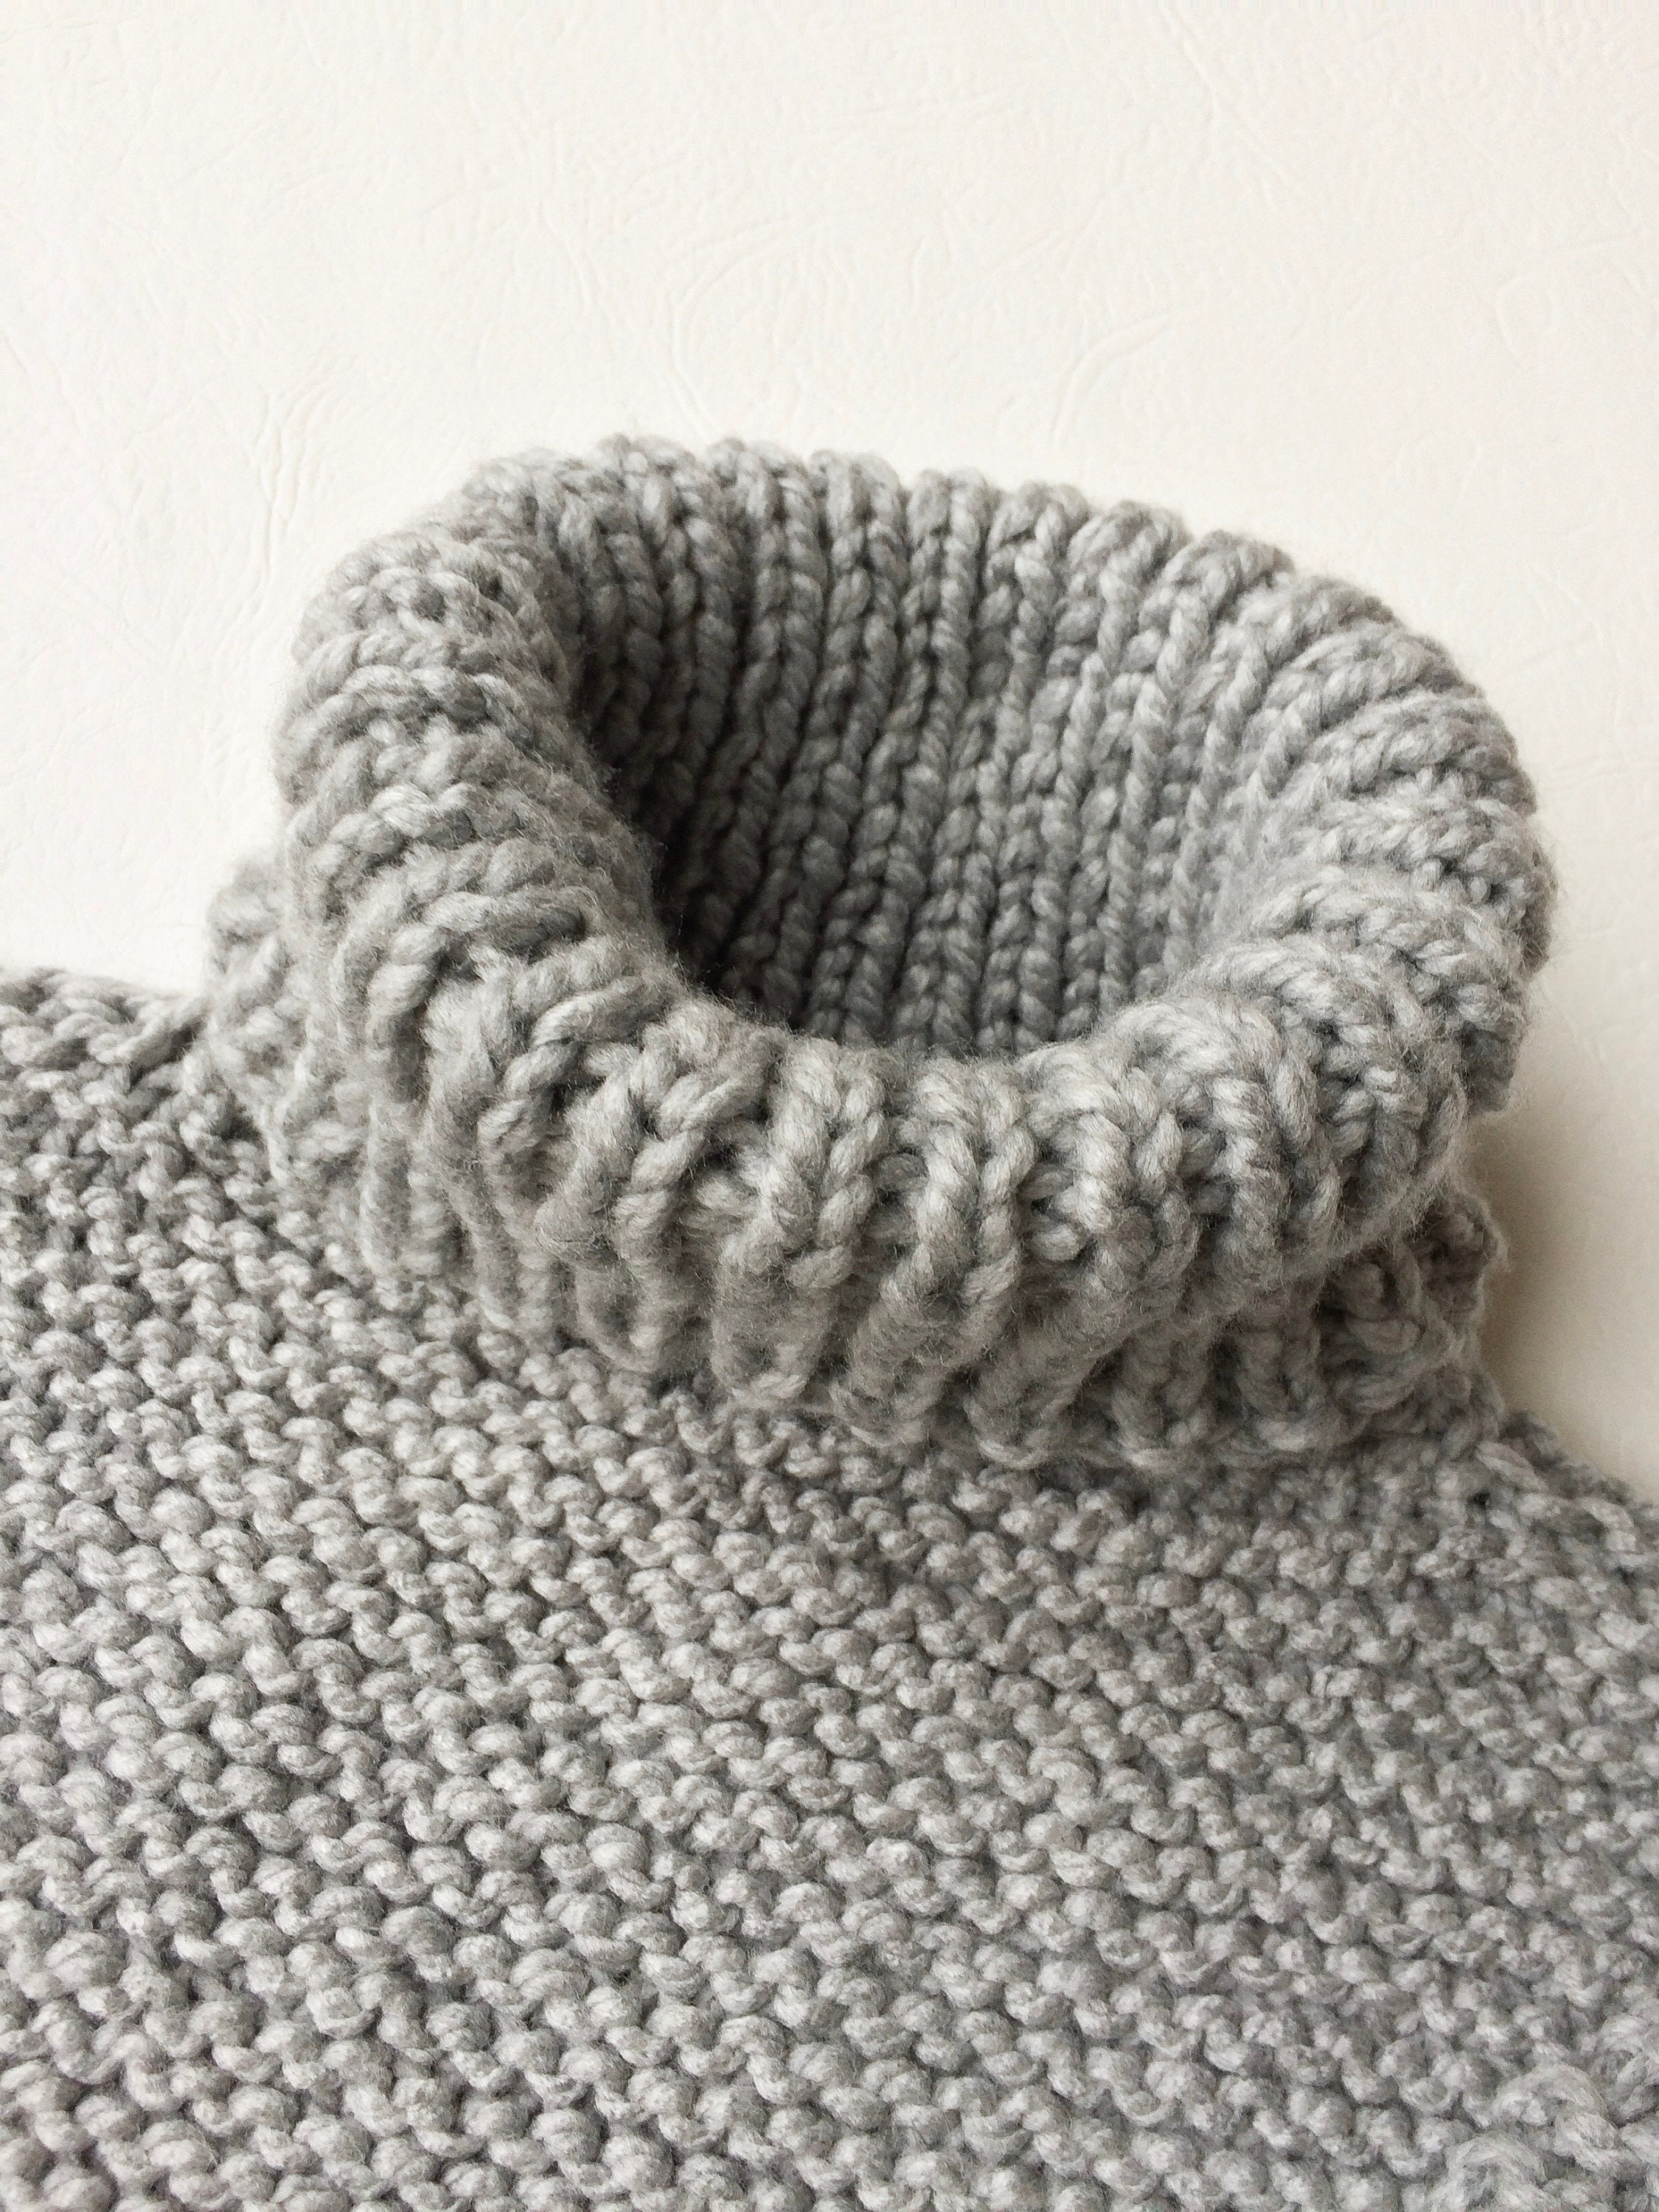 Chunky Knit Sweater Pattern Knit Cowl Neck Digital | Etsy